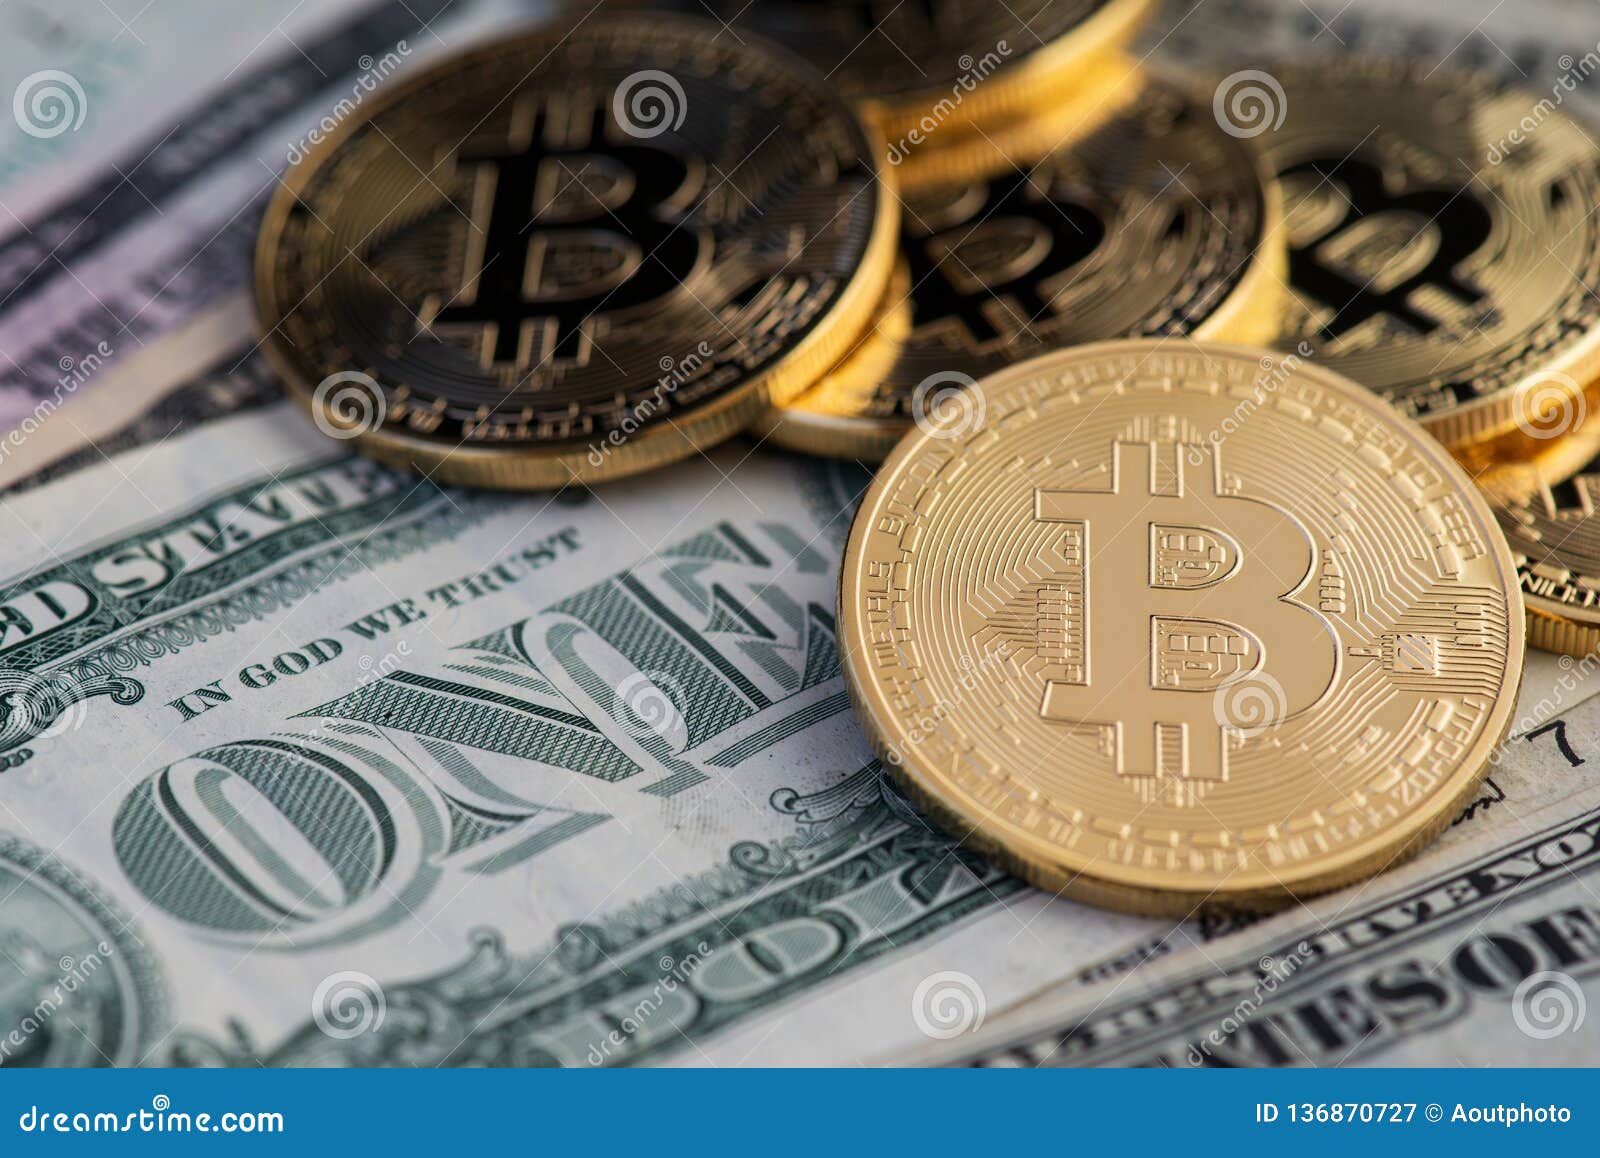 1 dollar bitcoin